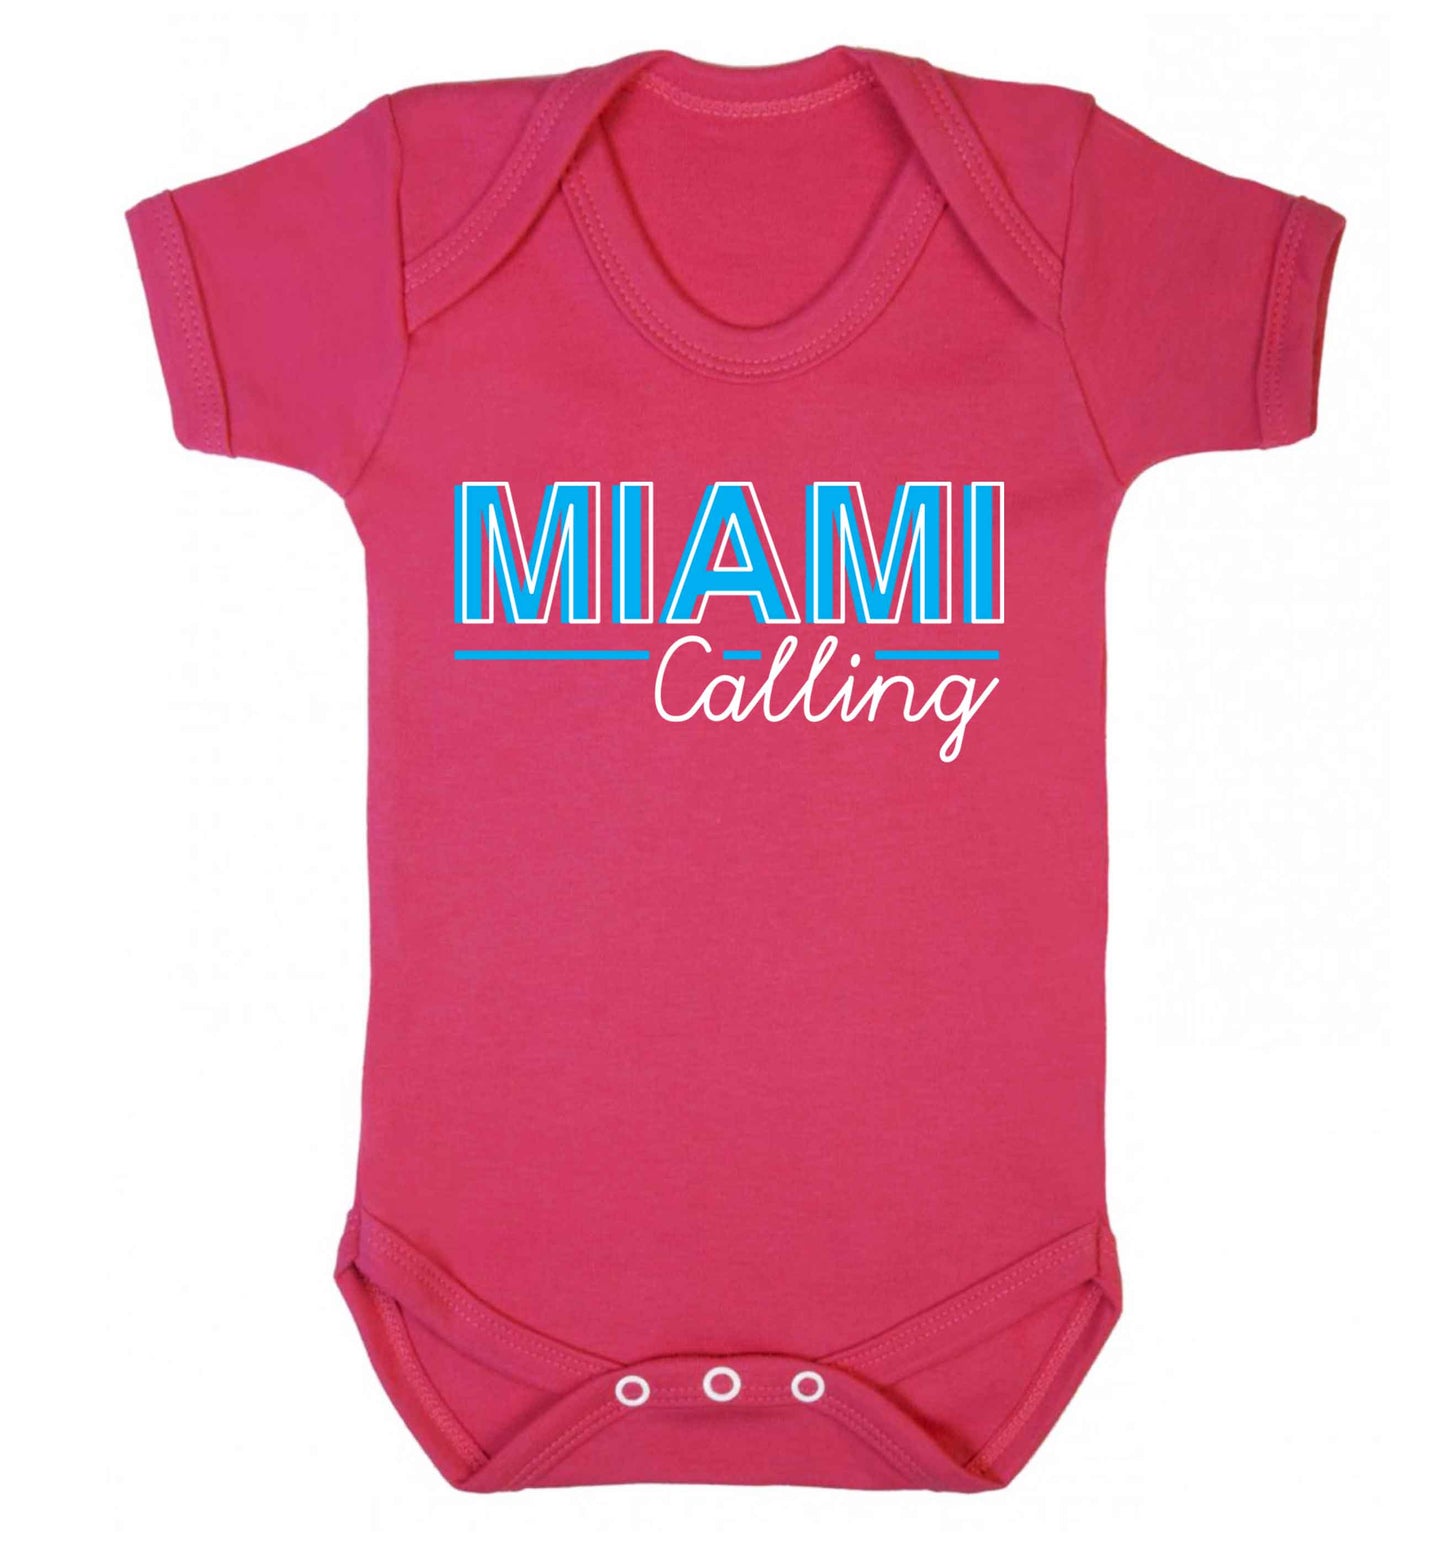 Miami calling Baby Vest dark pink 18-24 months